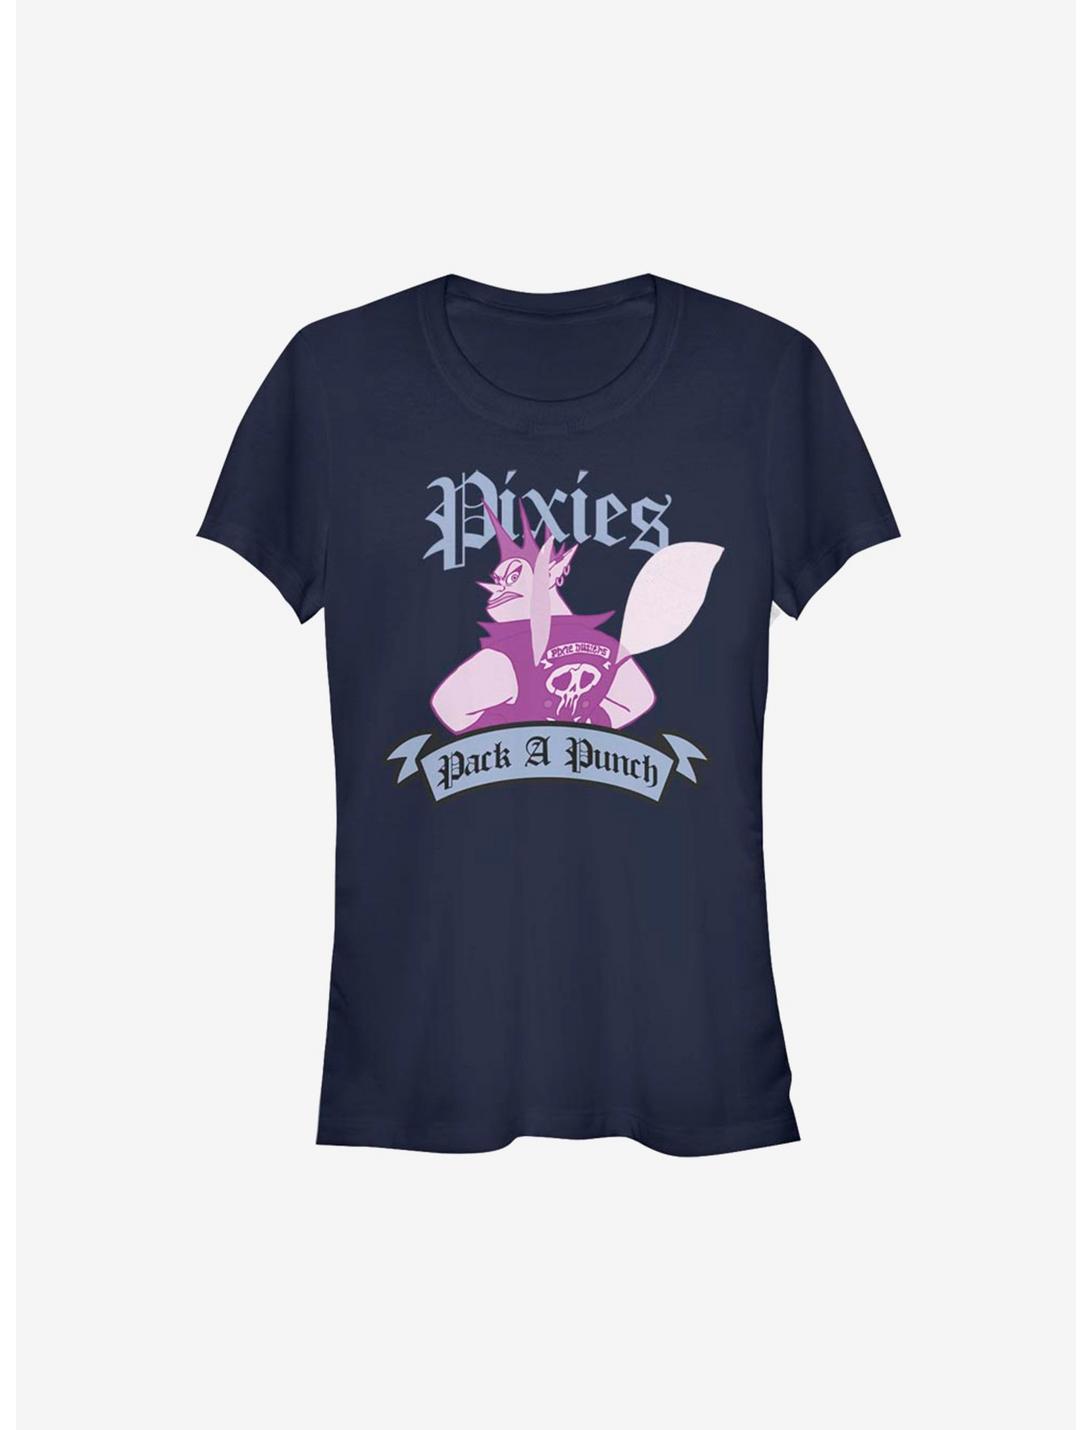 Disney Pixar Onward Pixie Punch Girls T-Shirt, NAVY, hi-res